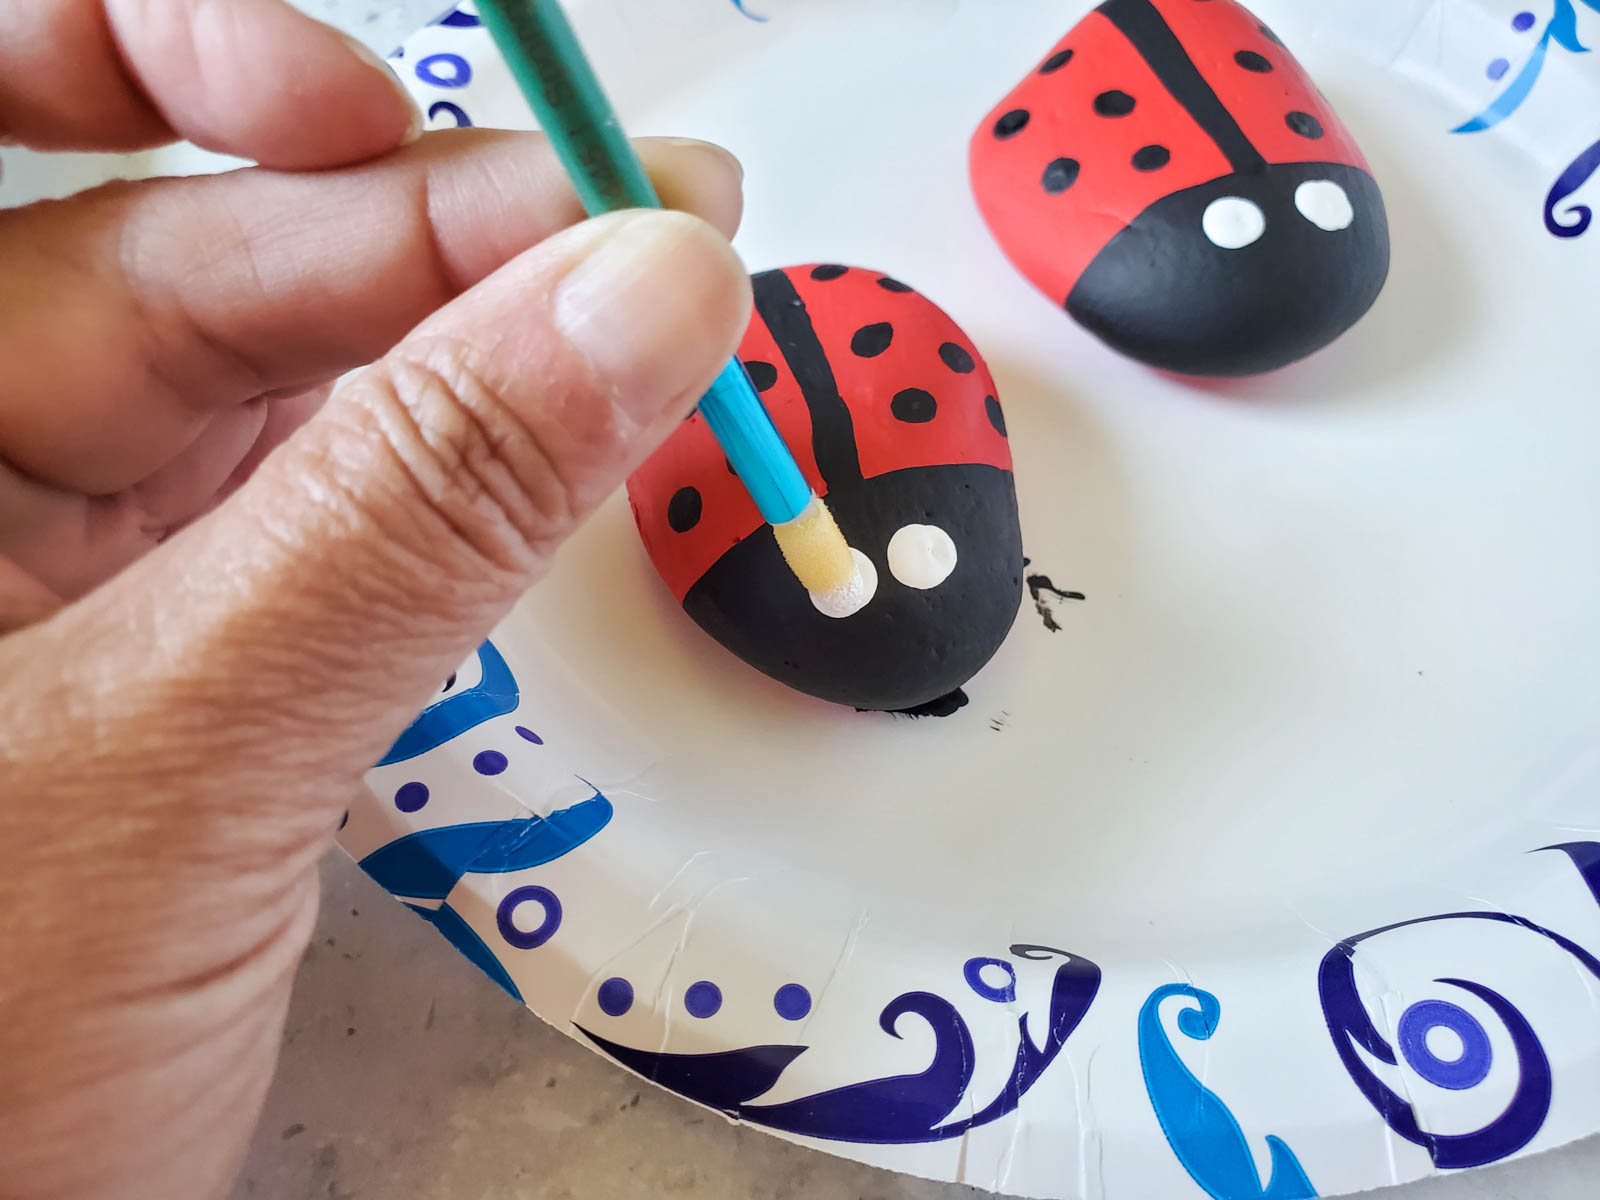 hand painting white eyes on ladybug painted rocks